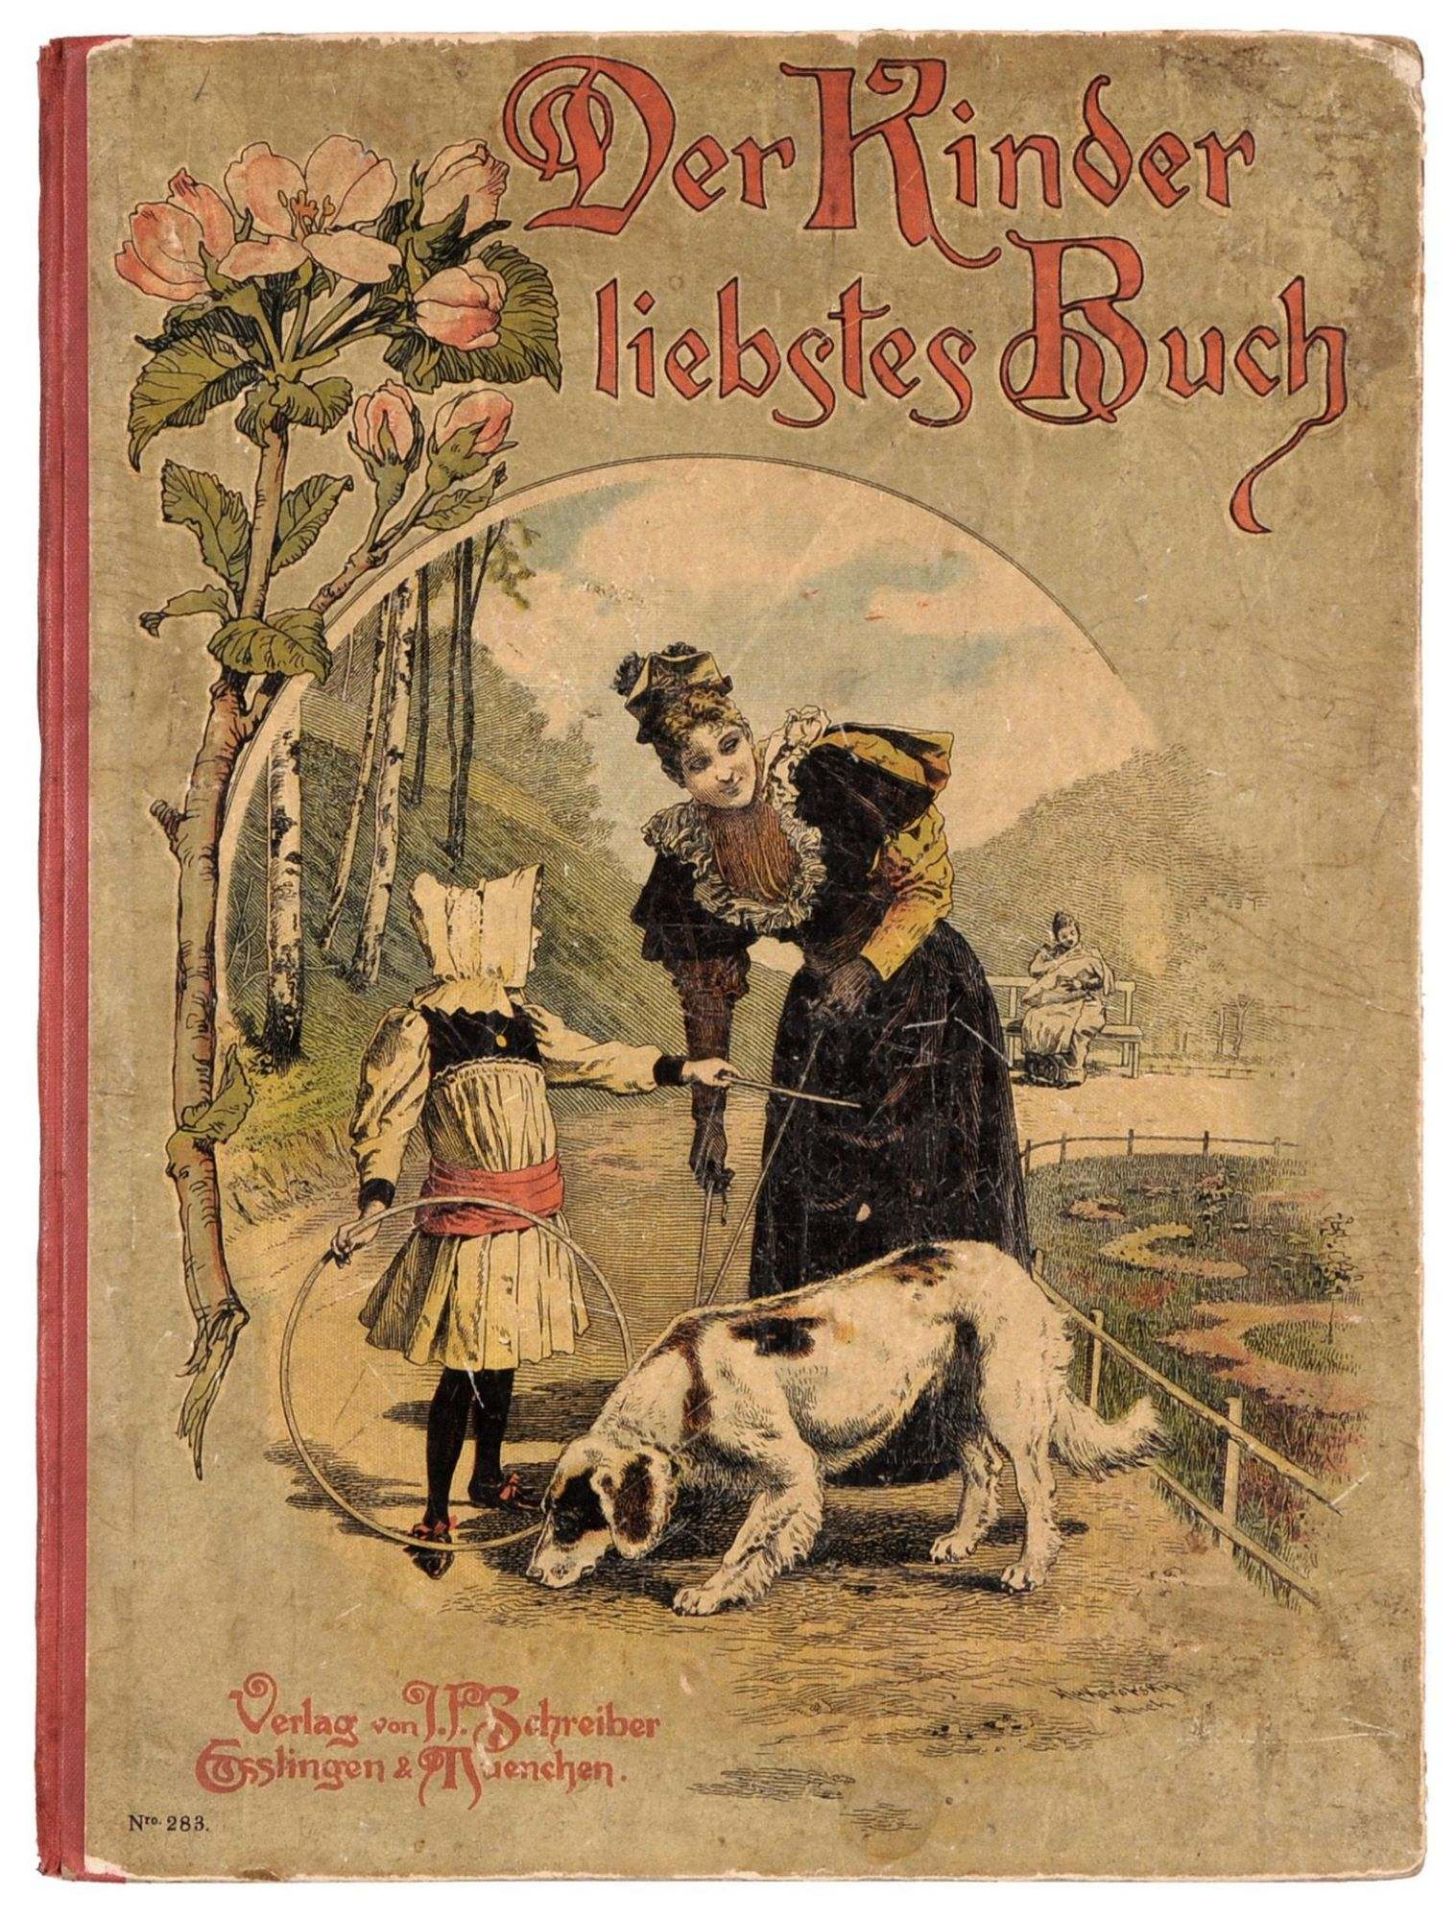 Verlag J. F. Schreiber "Der Kinder liebstes Buch". Wohl um 1900.